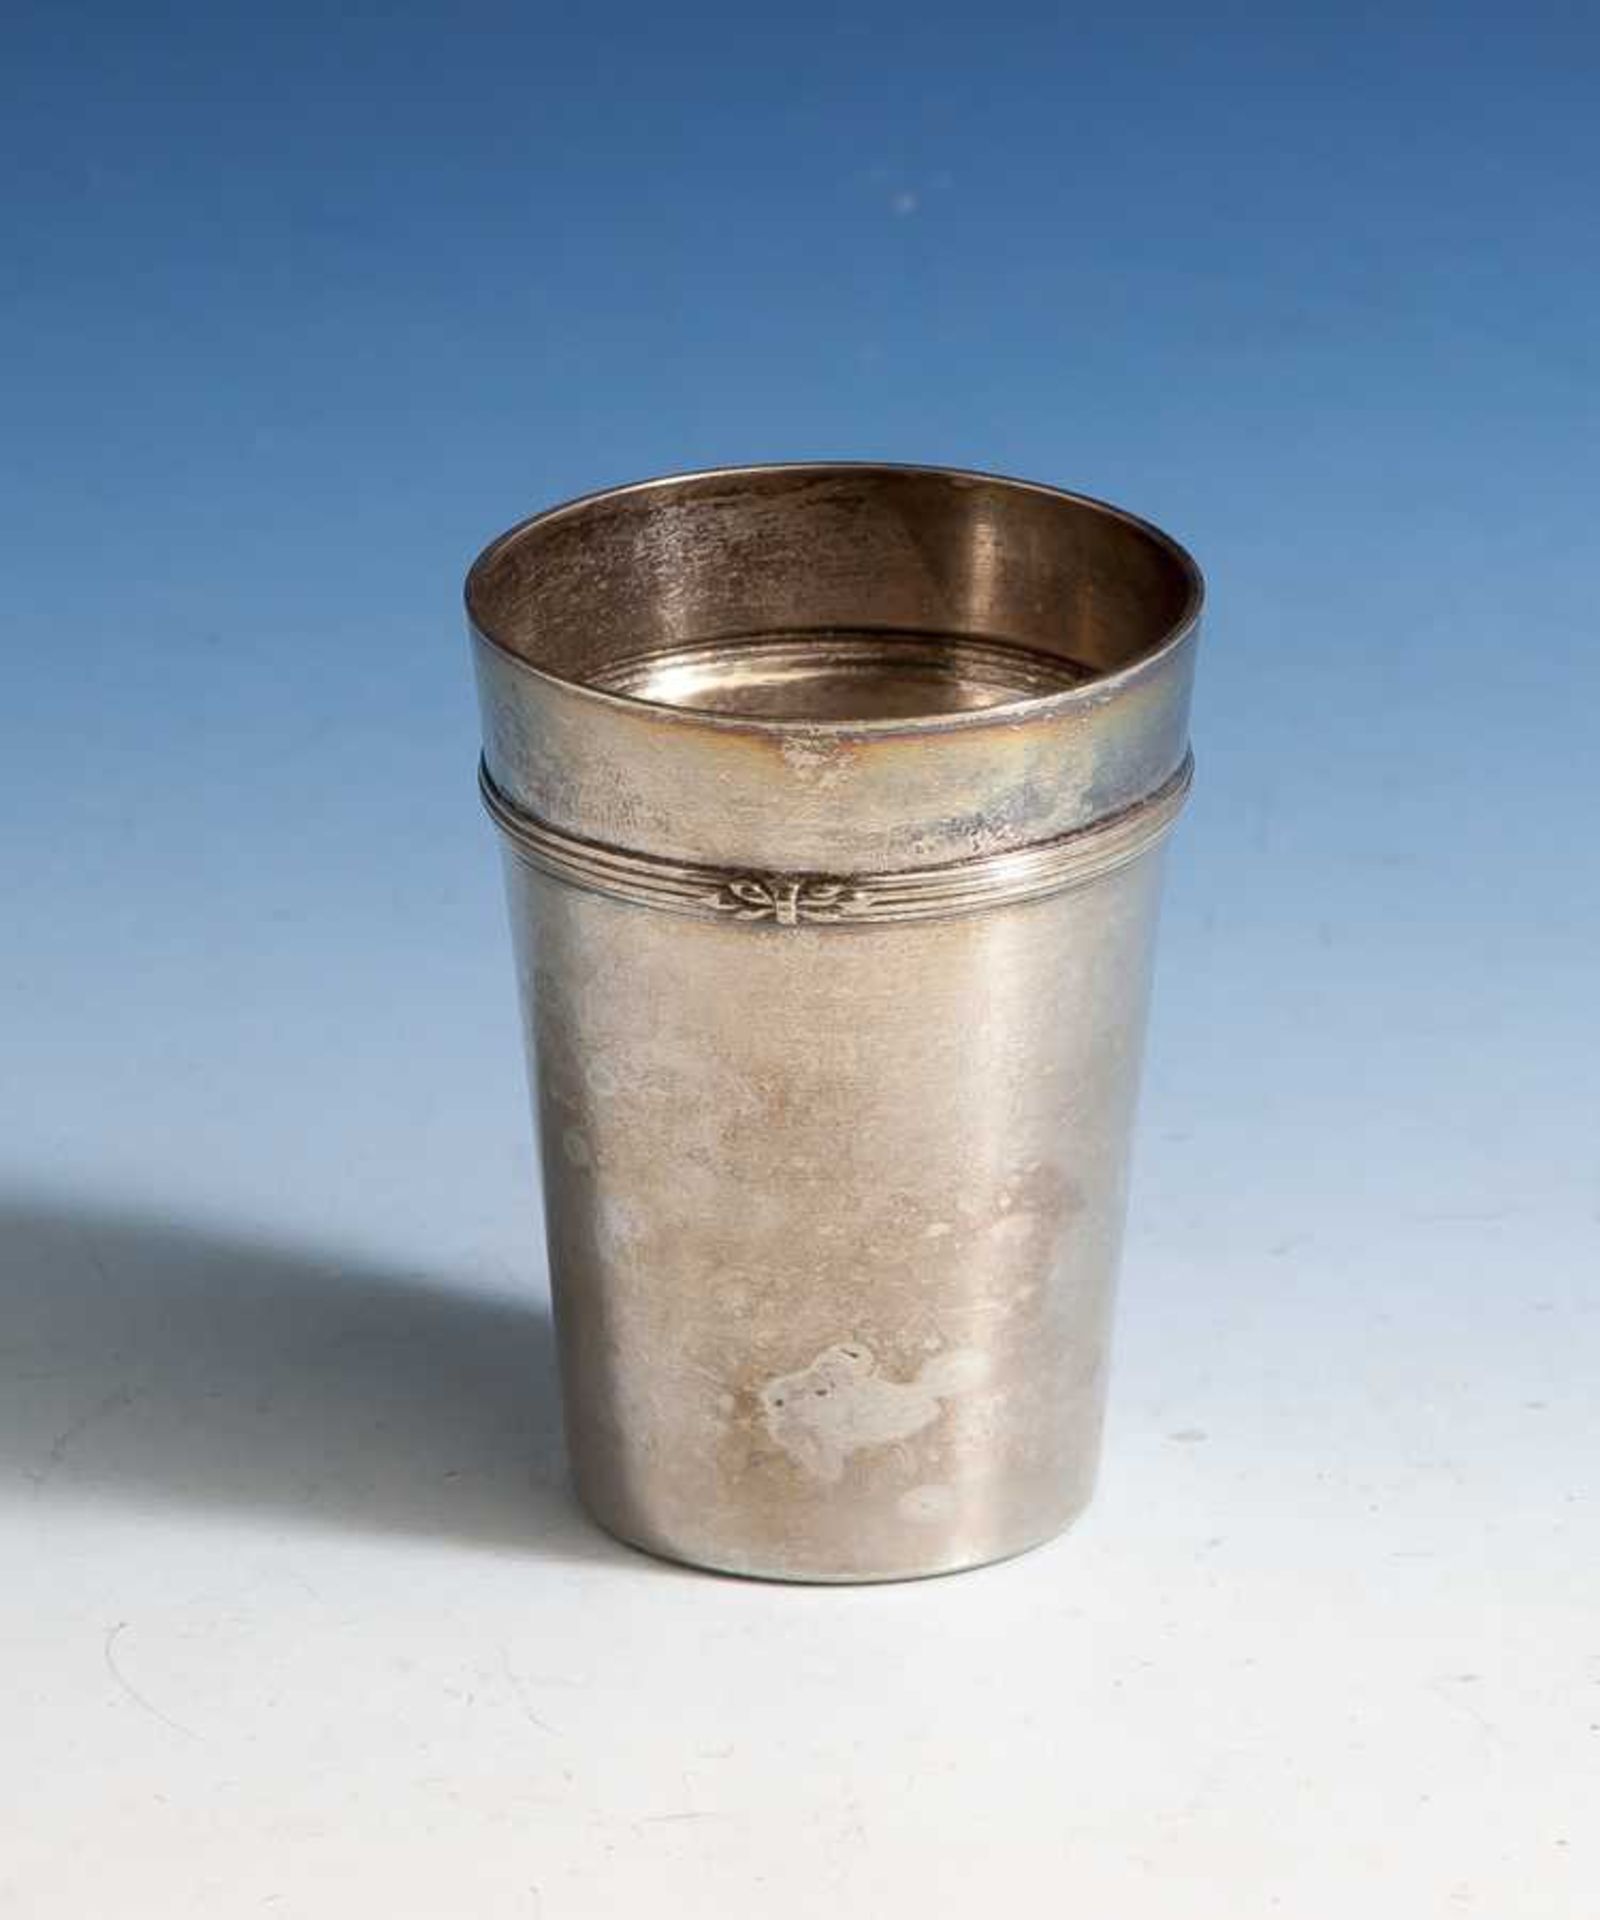 Kleiner Becher, Silber, lötig, 1. Hälfte 19. Jahrhundert, undeutl. gepunzt, leichtauslaufender